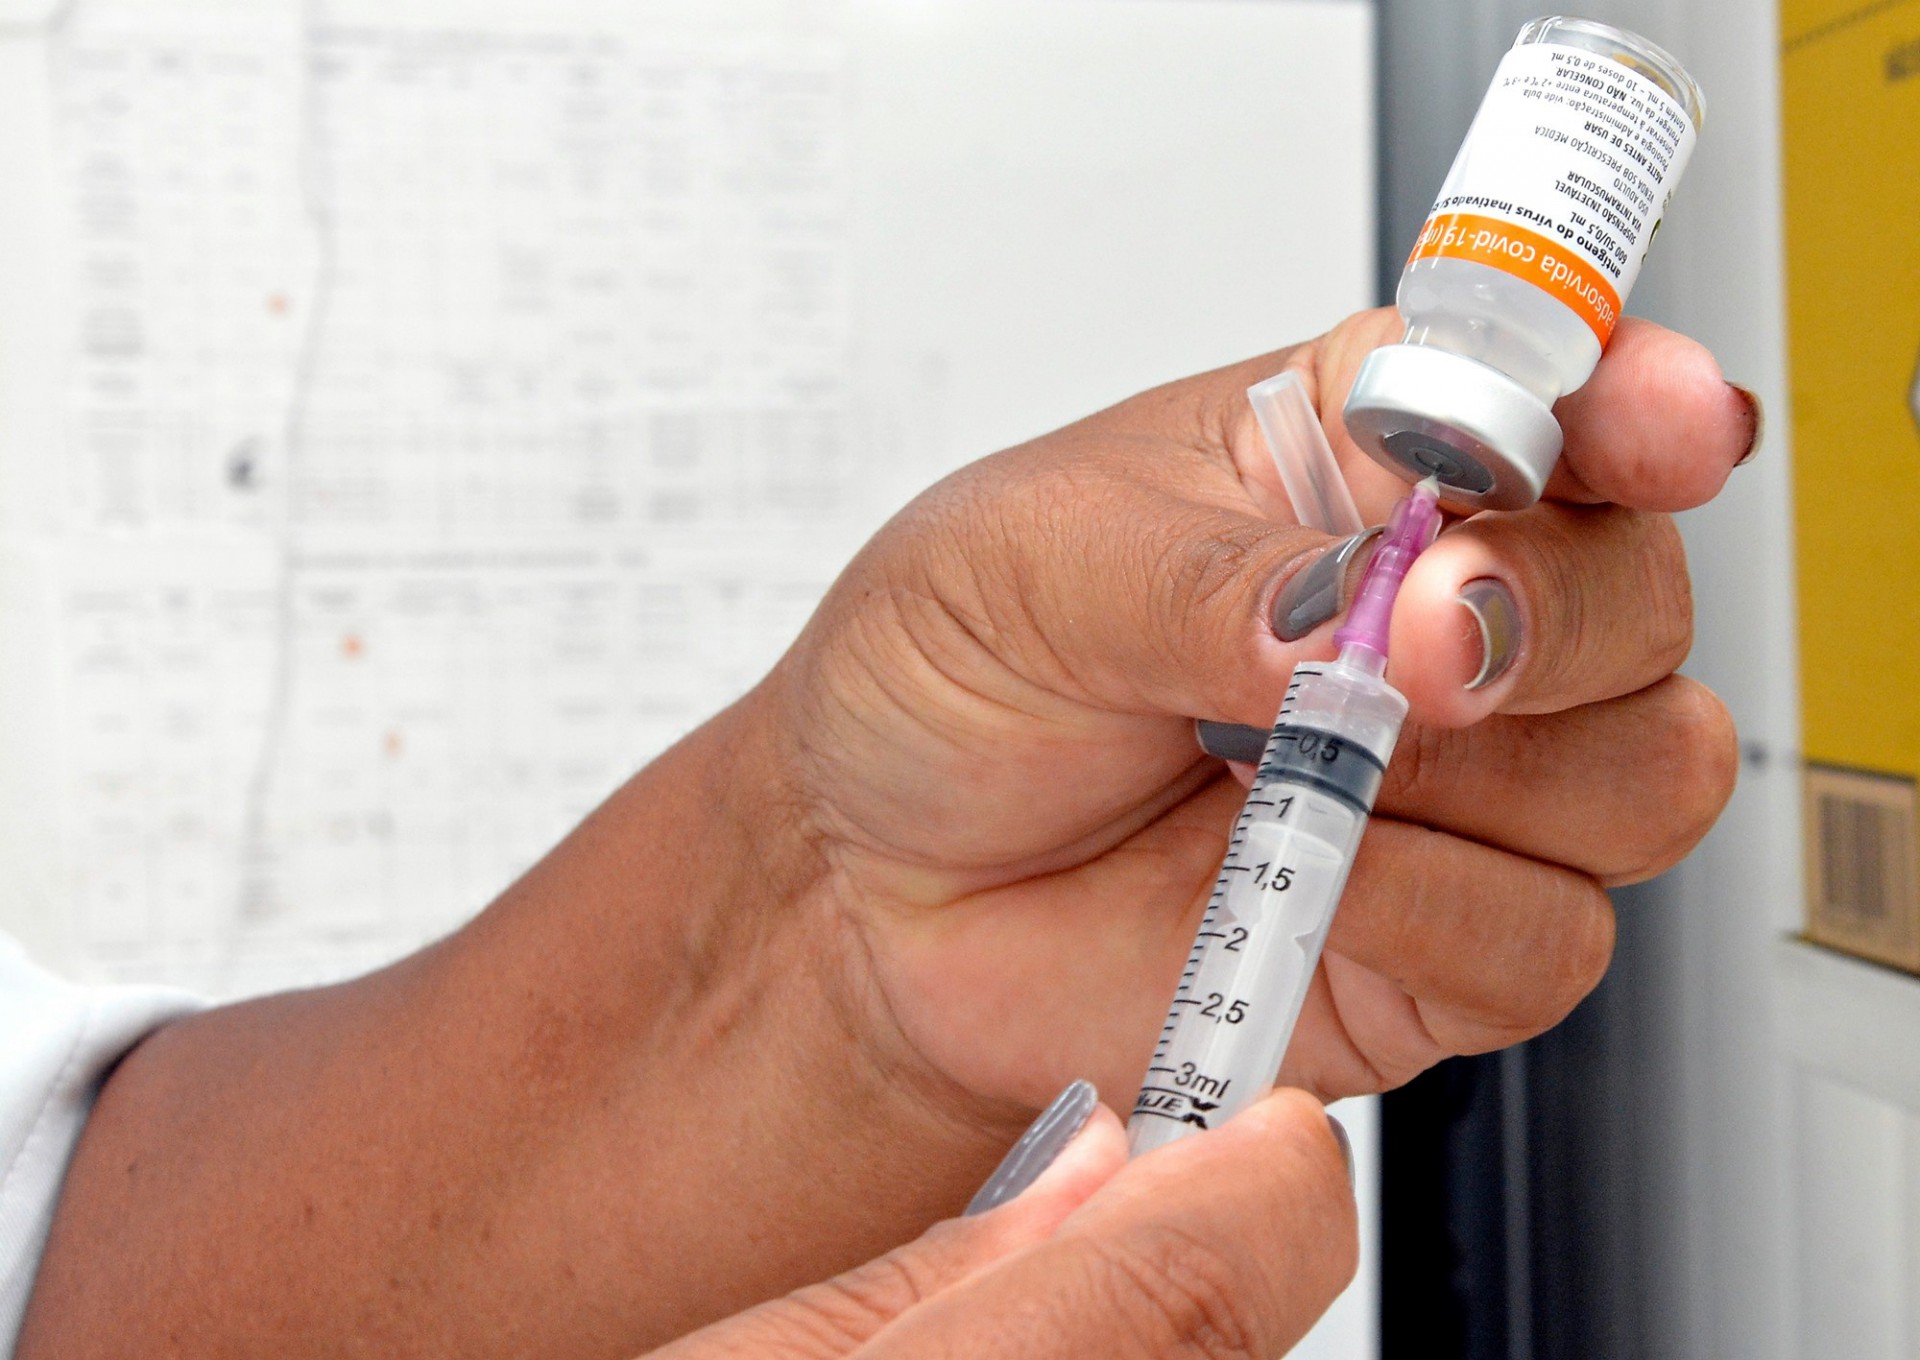 Covid-19: confira a programação de vacinação em Volta Redonda nesta 5ª feira, dia 23